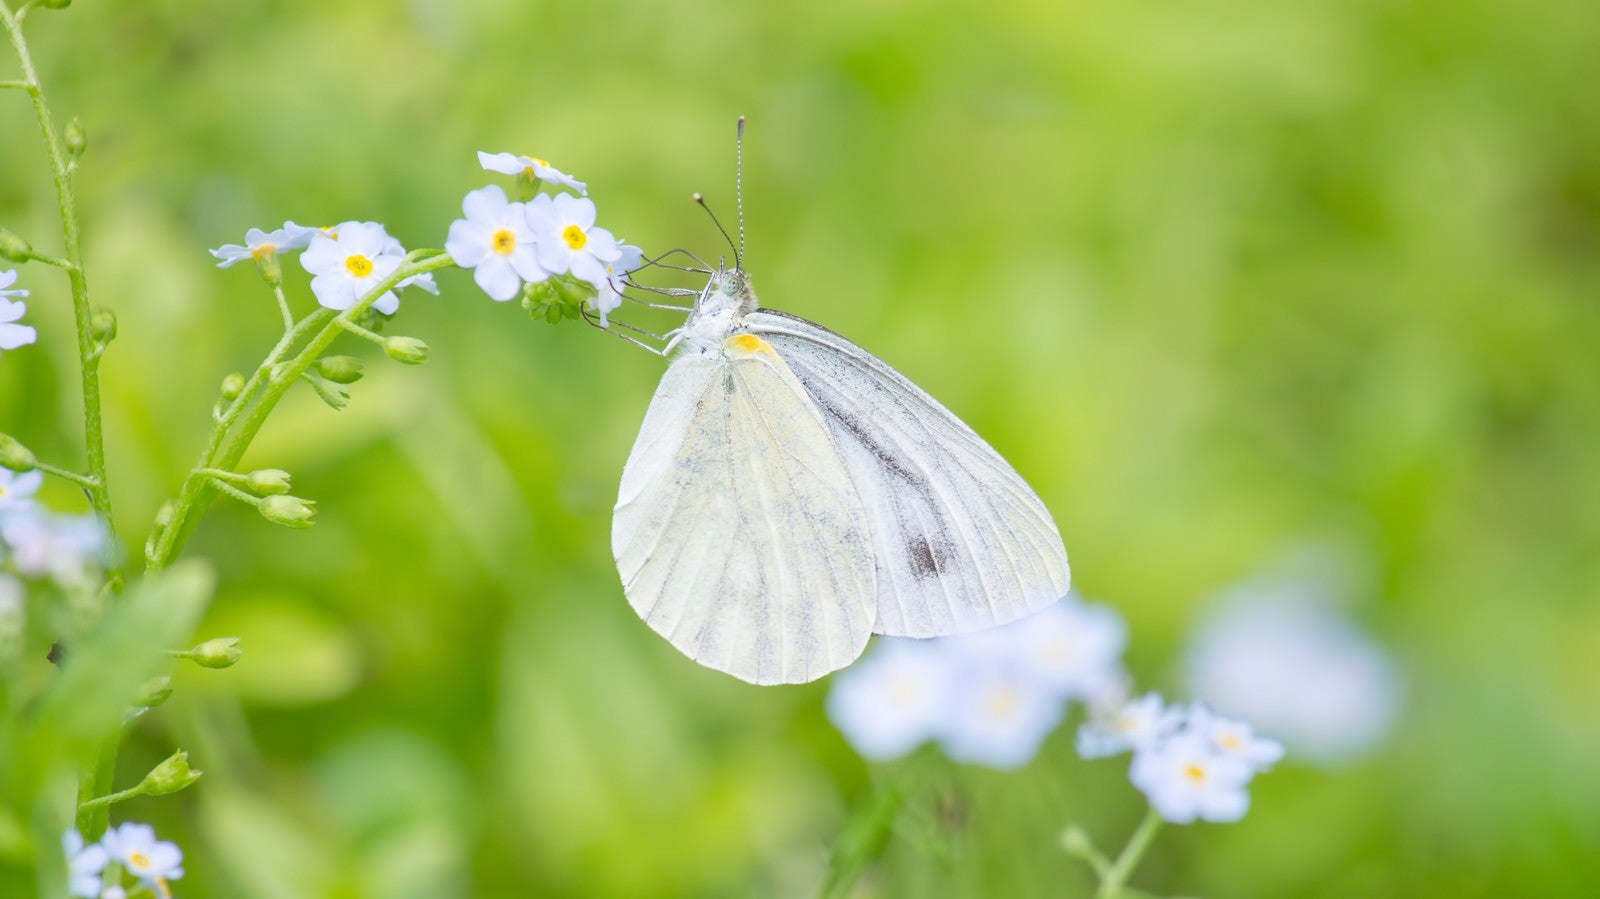 「蜜を吸う紋白蝶」の写真